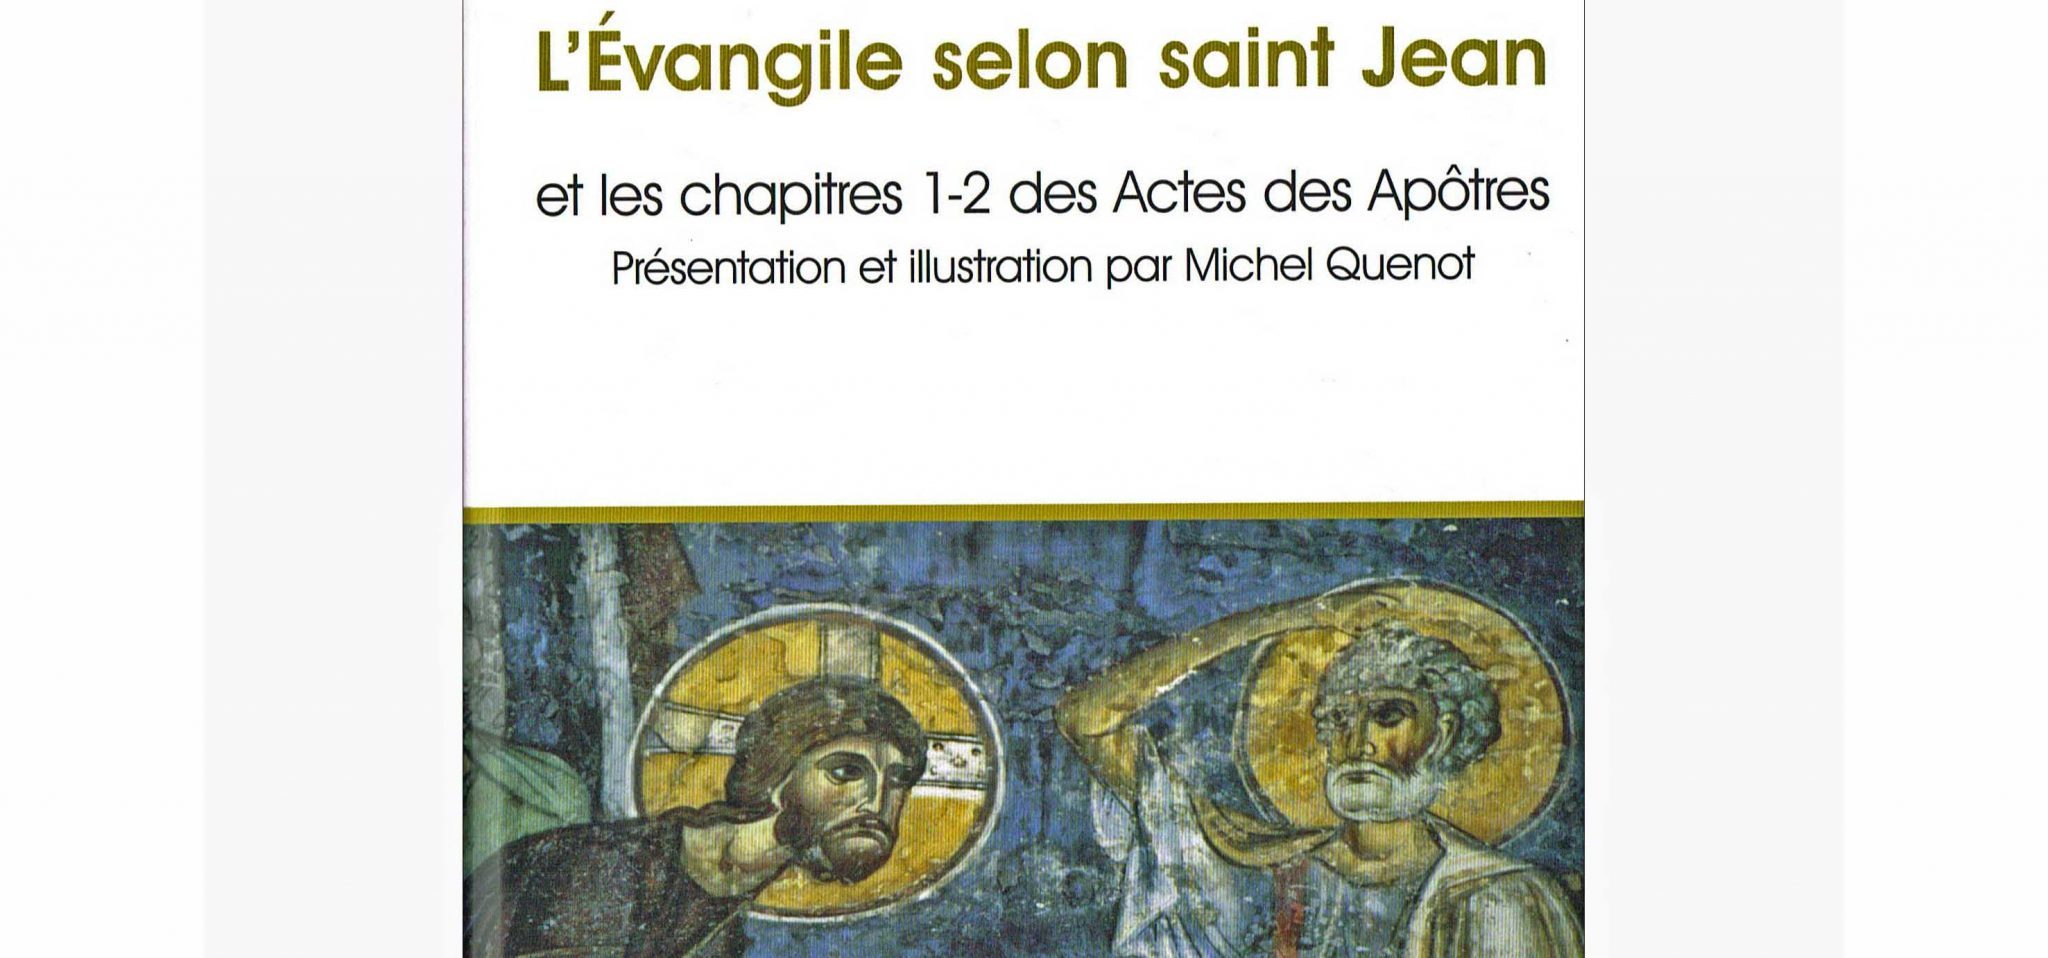 L’Évangile selon saint Jean et les chapitres 1-2 des Actes des Apôtres. Présentation et illustration par le père Michel Quenot